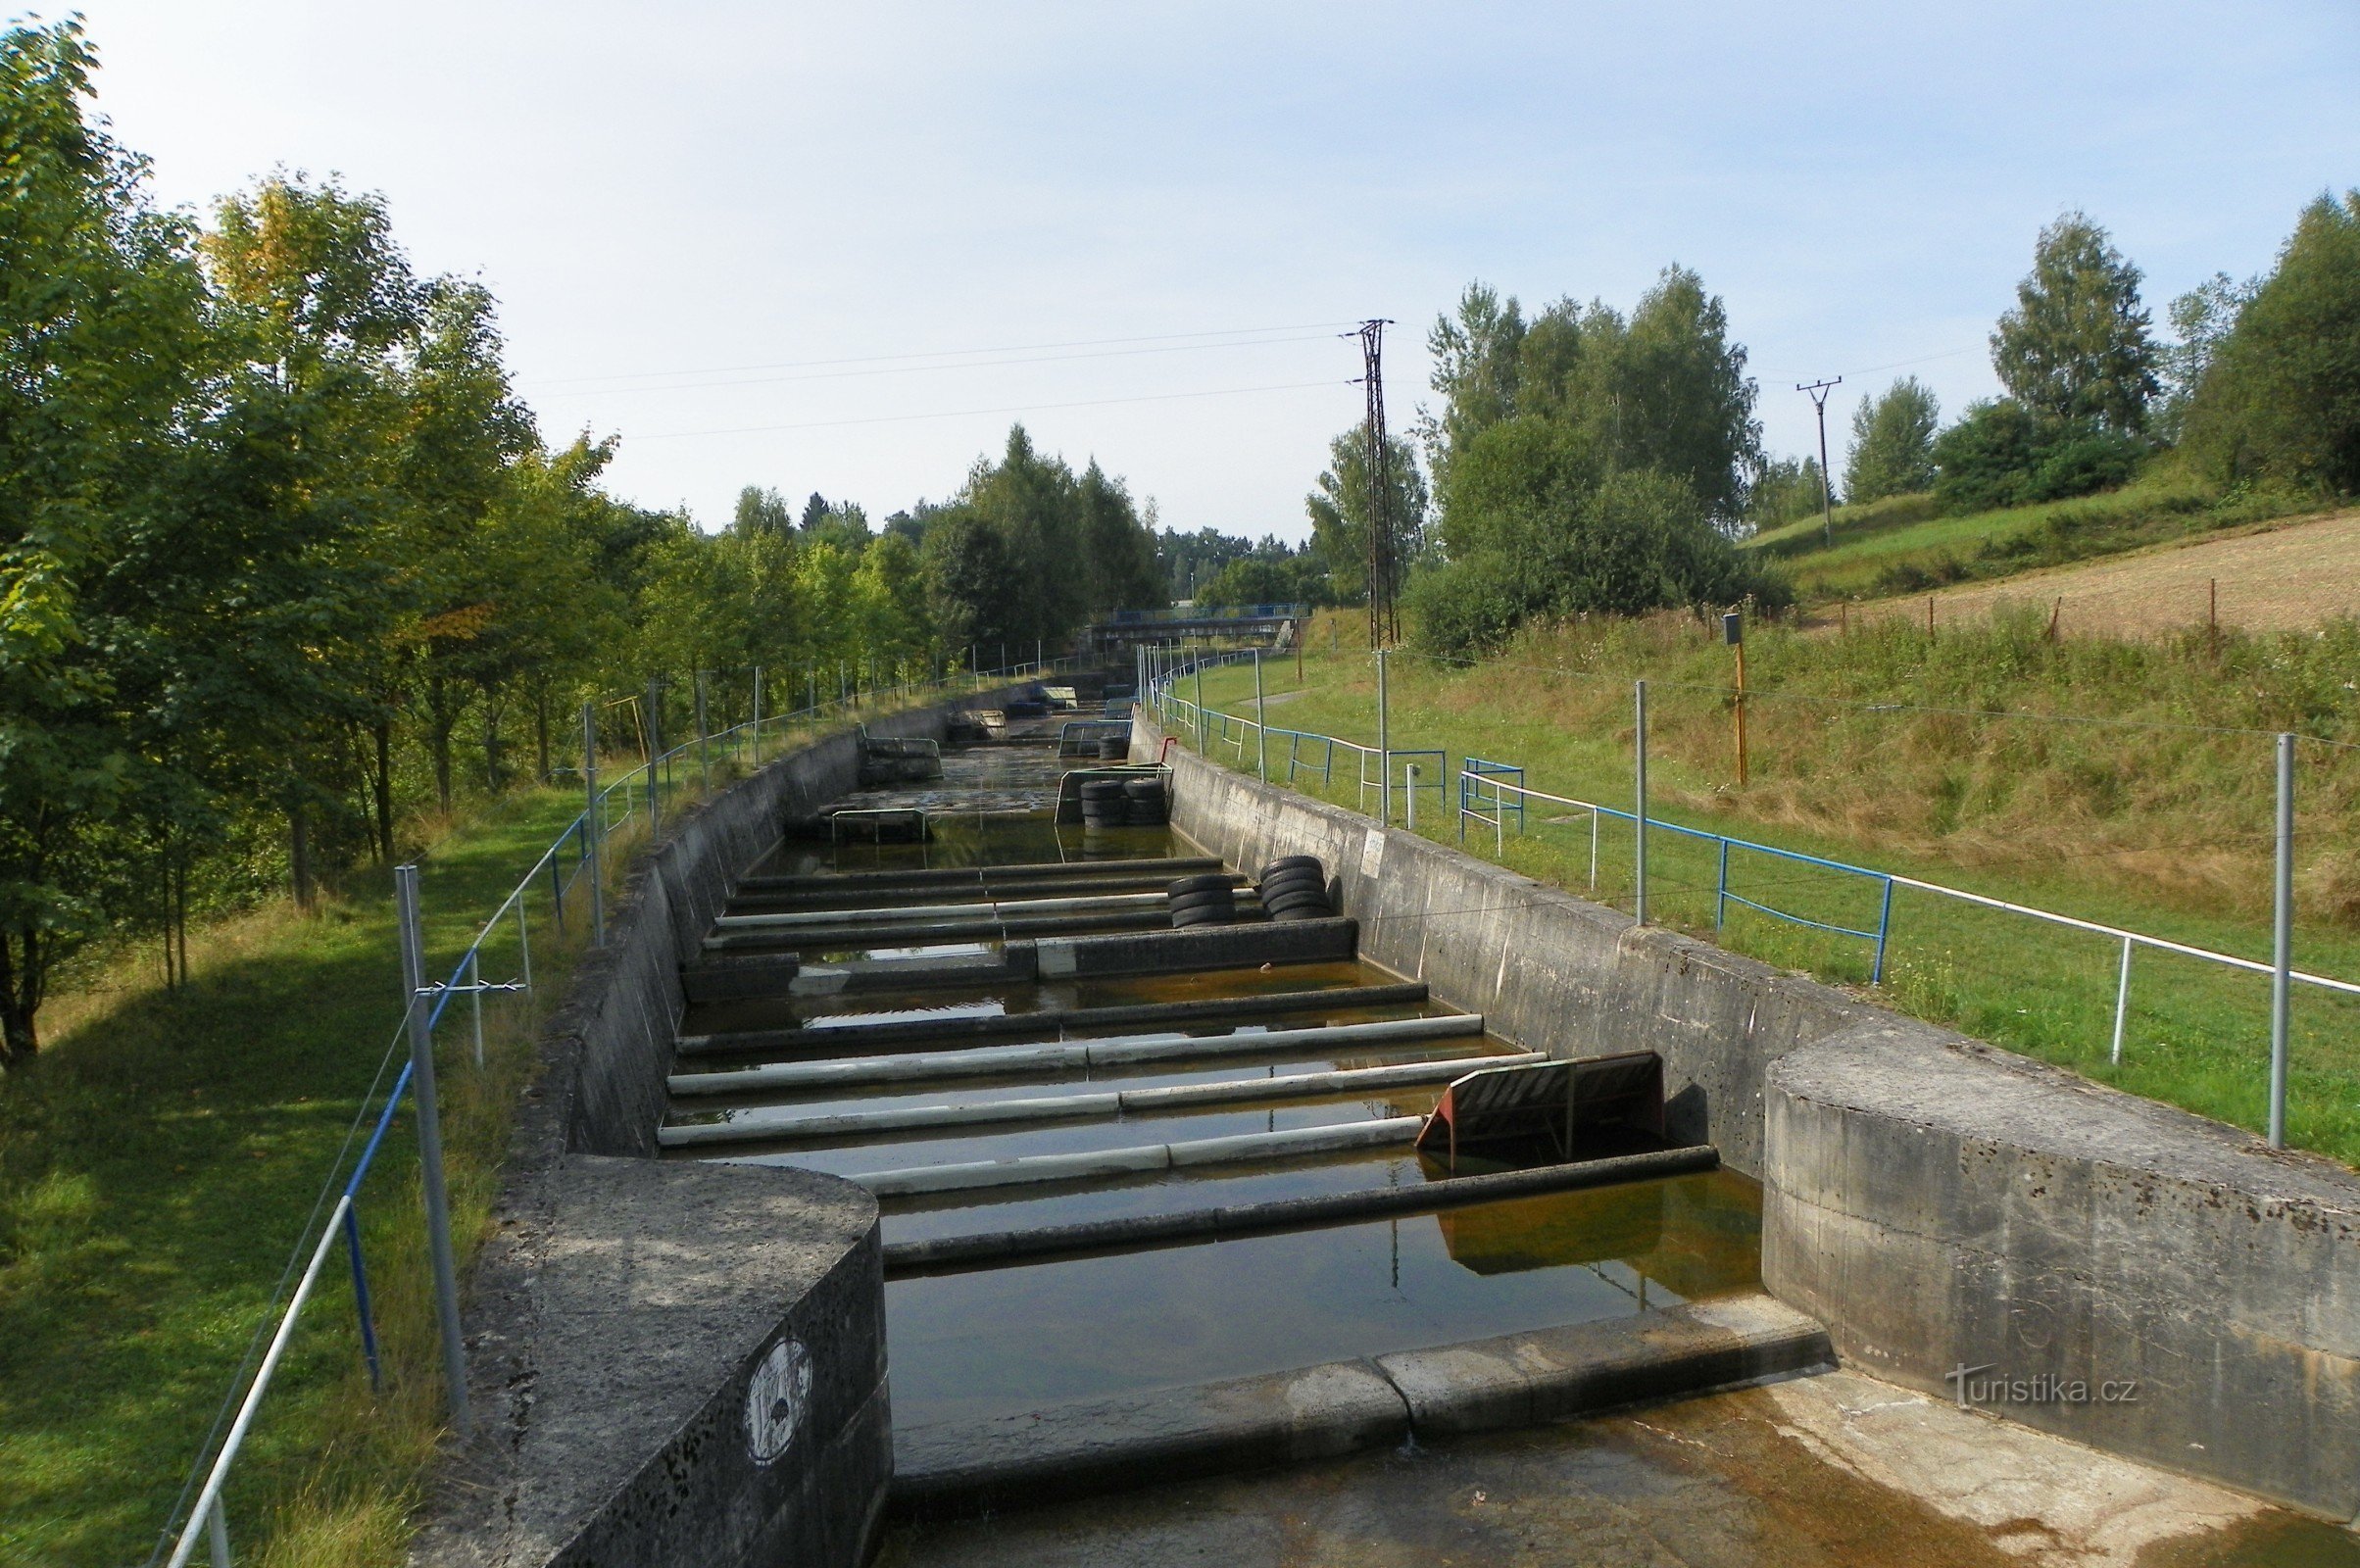 Obstáculos no canal em Trnava